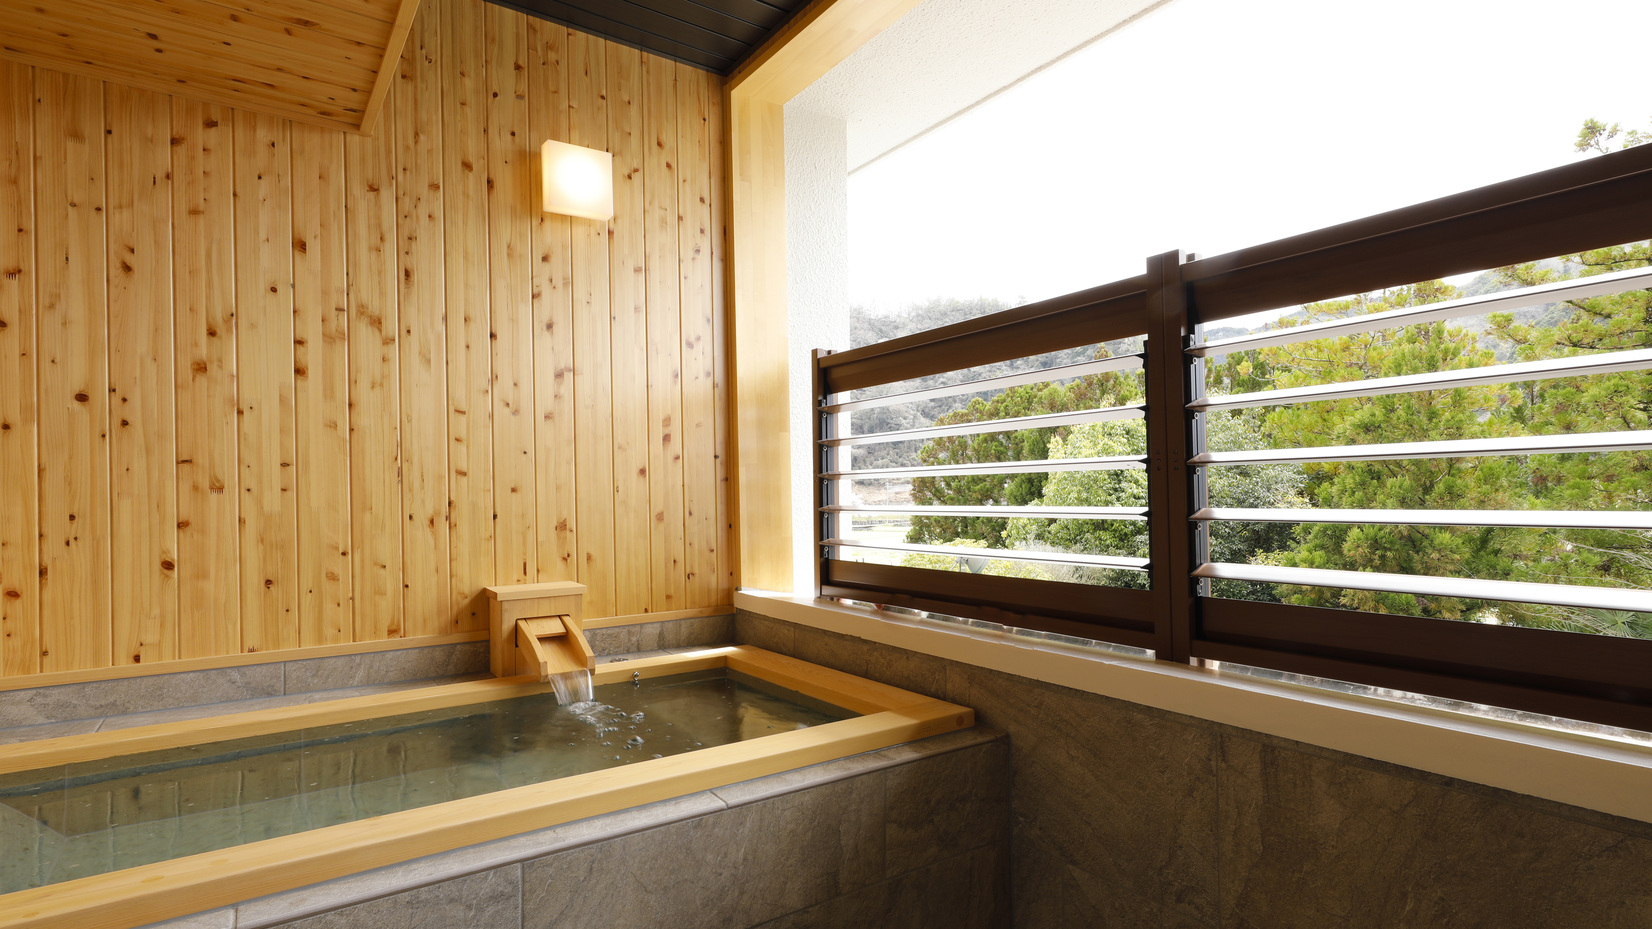 2022年4月オープン露天風呂客室【小満】露天風呂マウントビュー※お湯は温泉ではありません